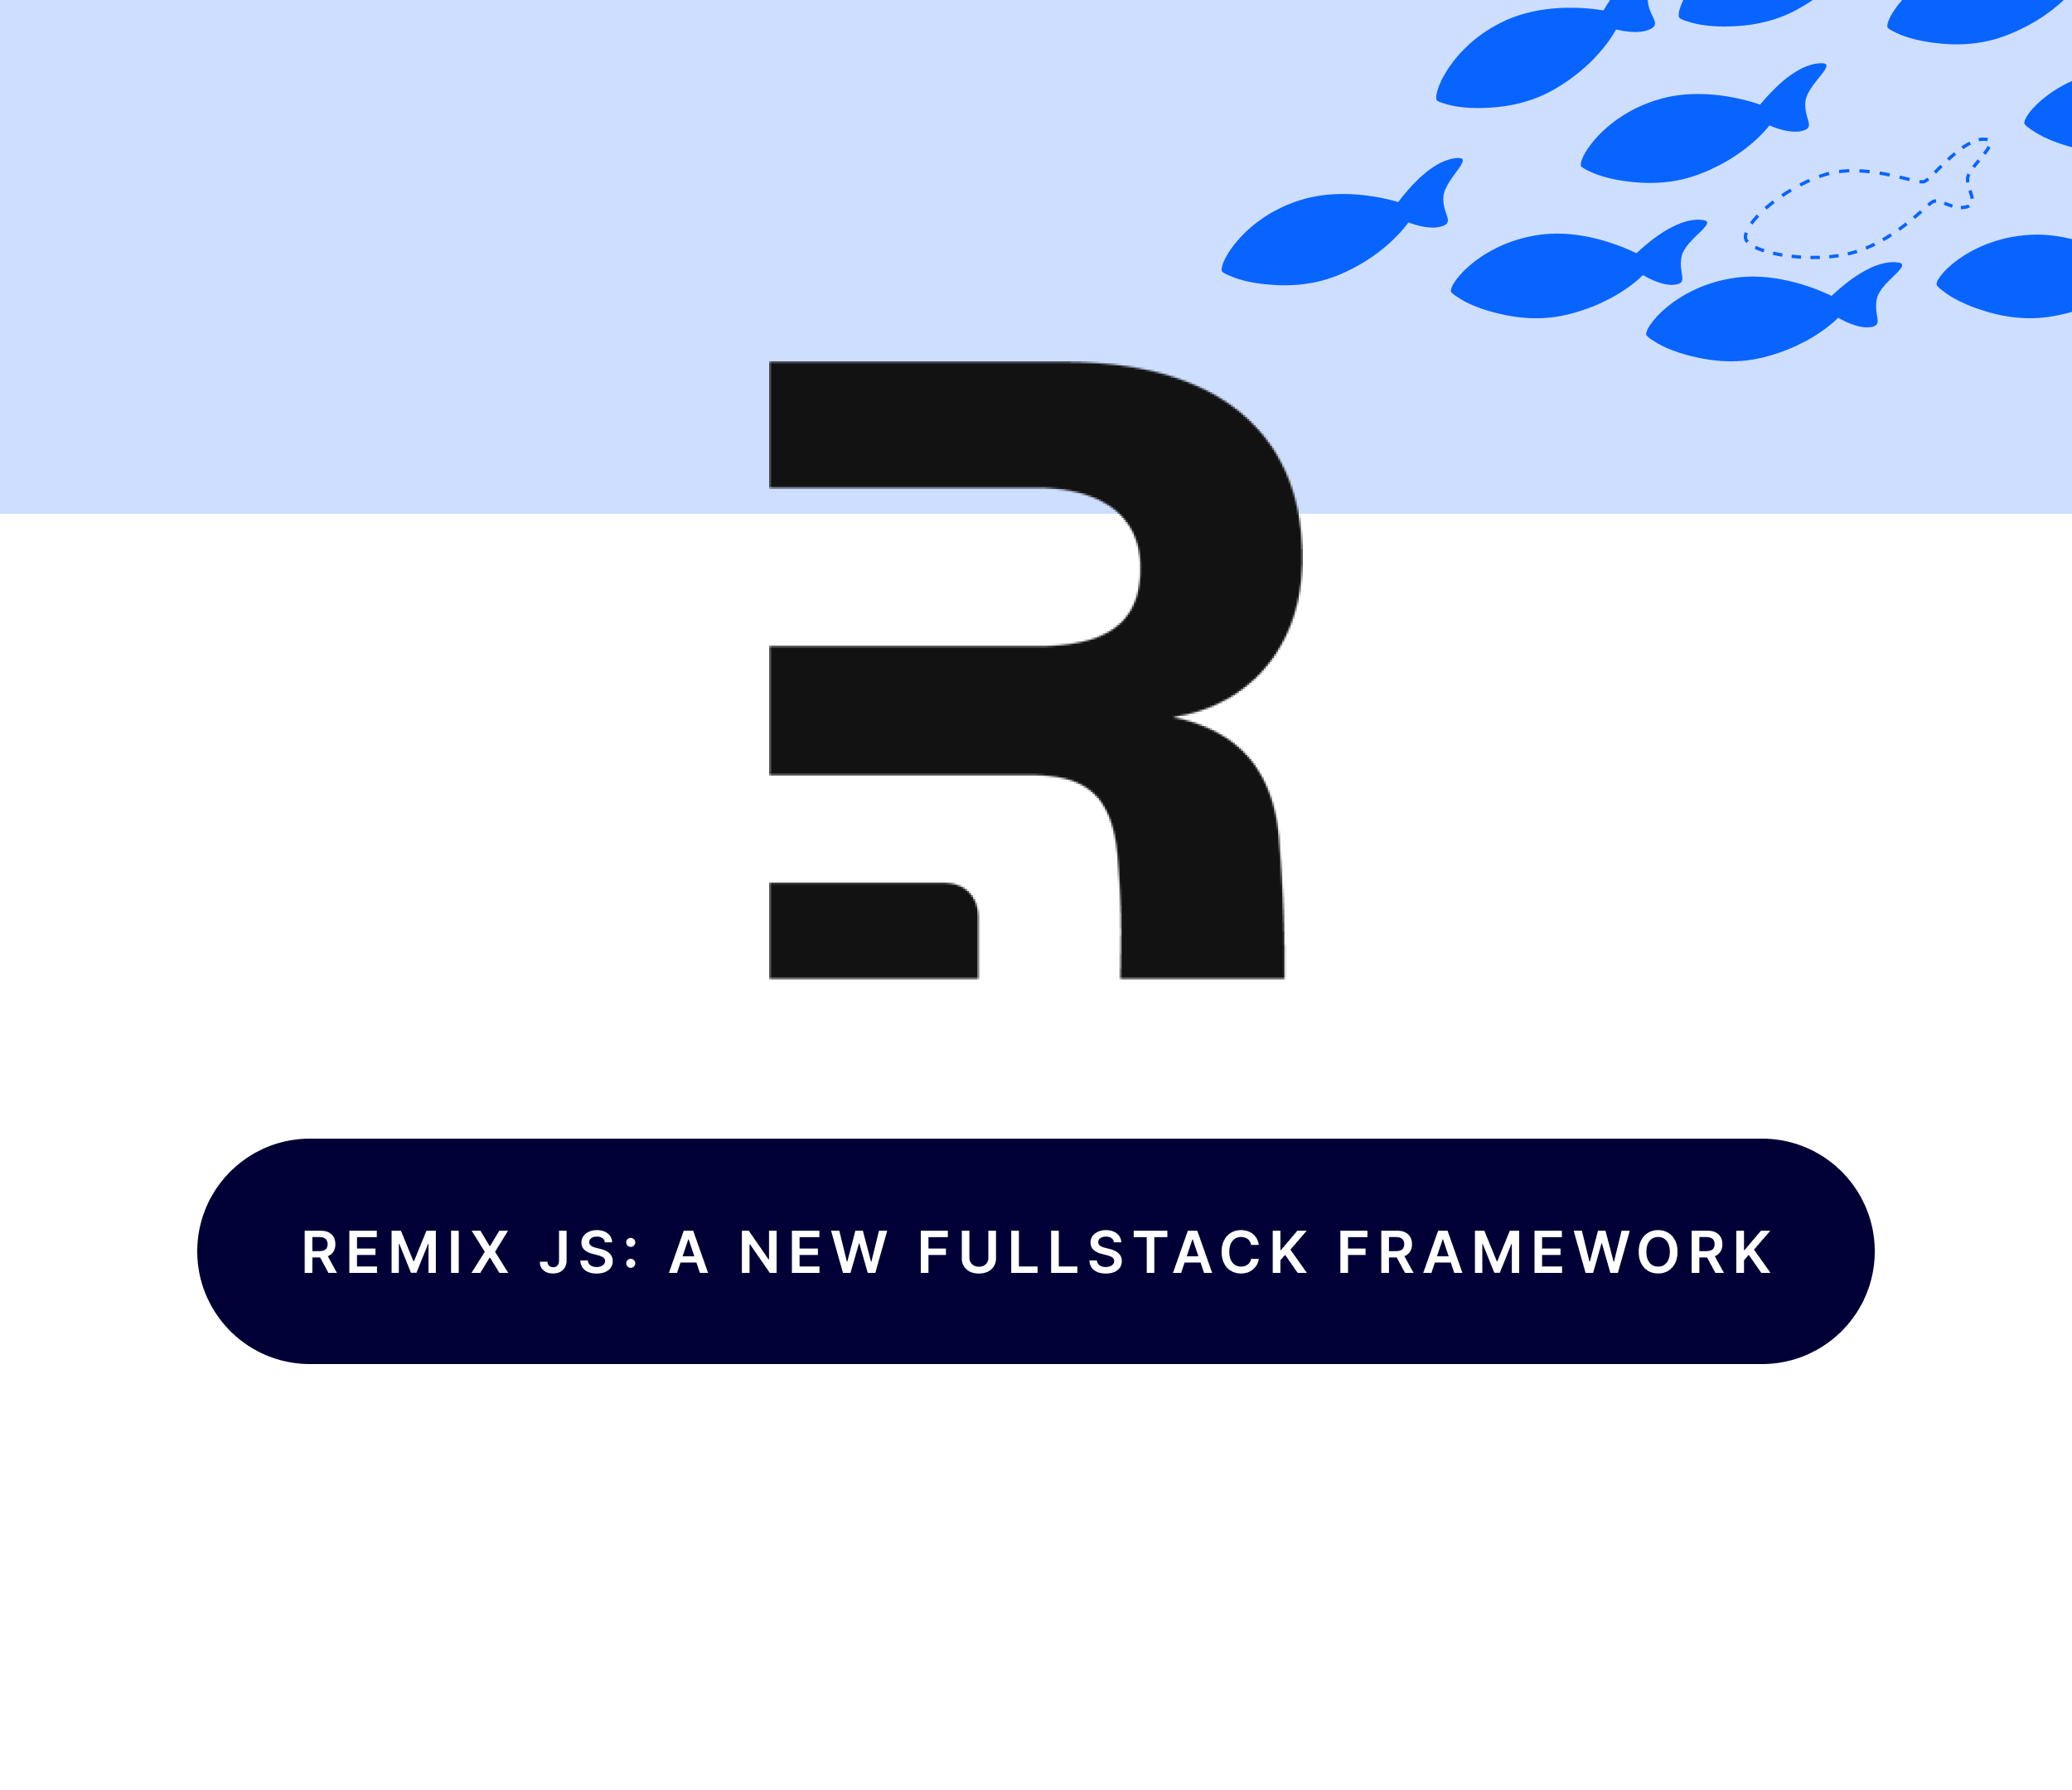 Remix JS: a new fullstack framework